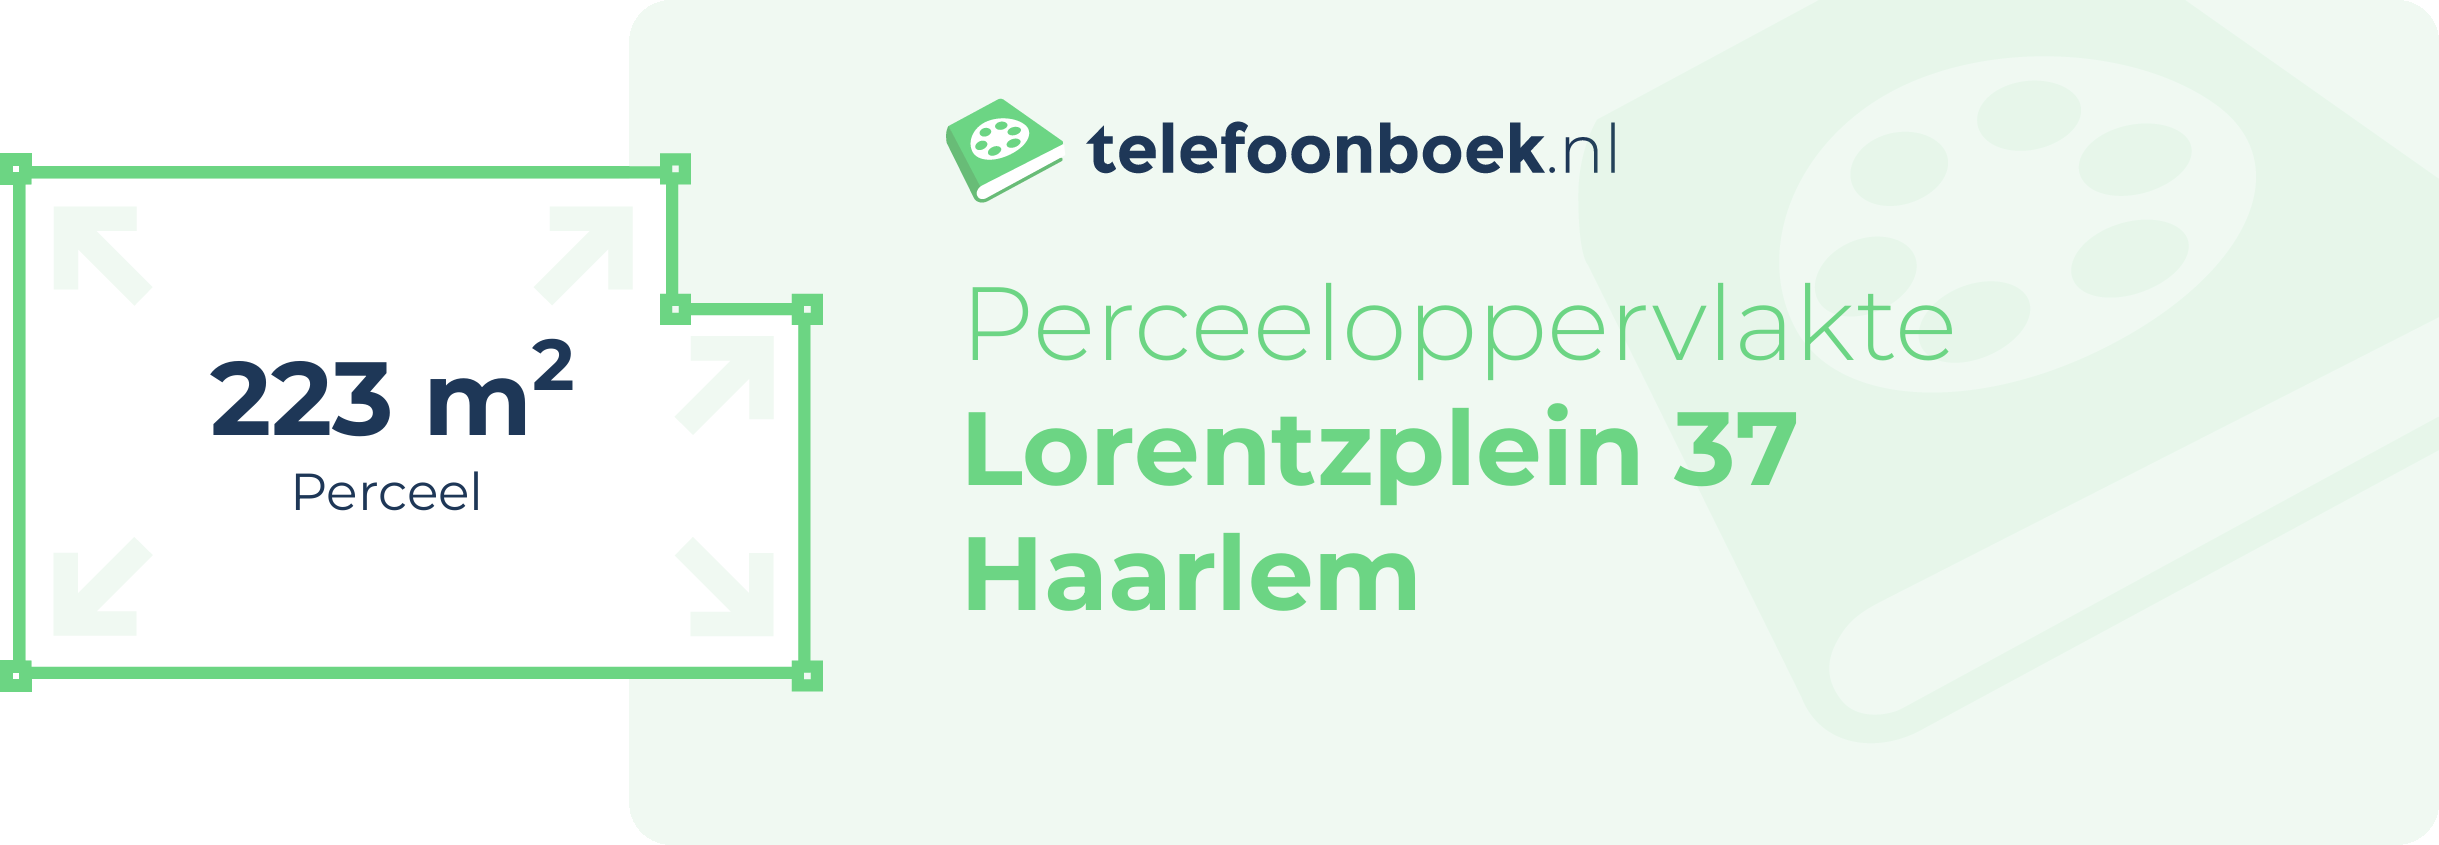 Perceeloppervlakte Lorentzplein 37 Haarlem